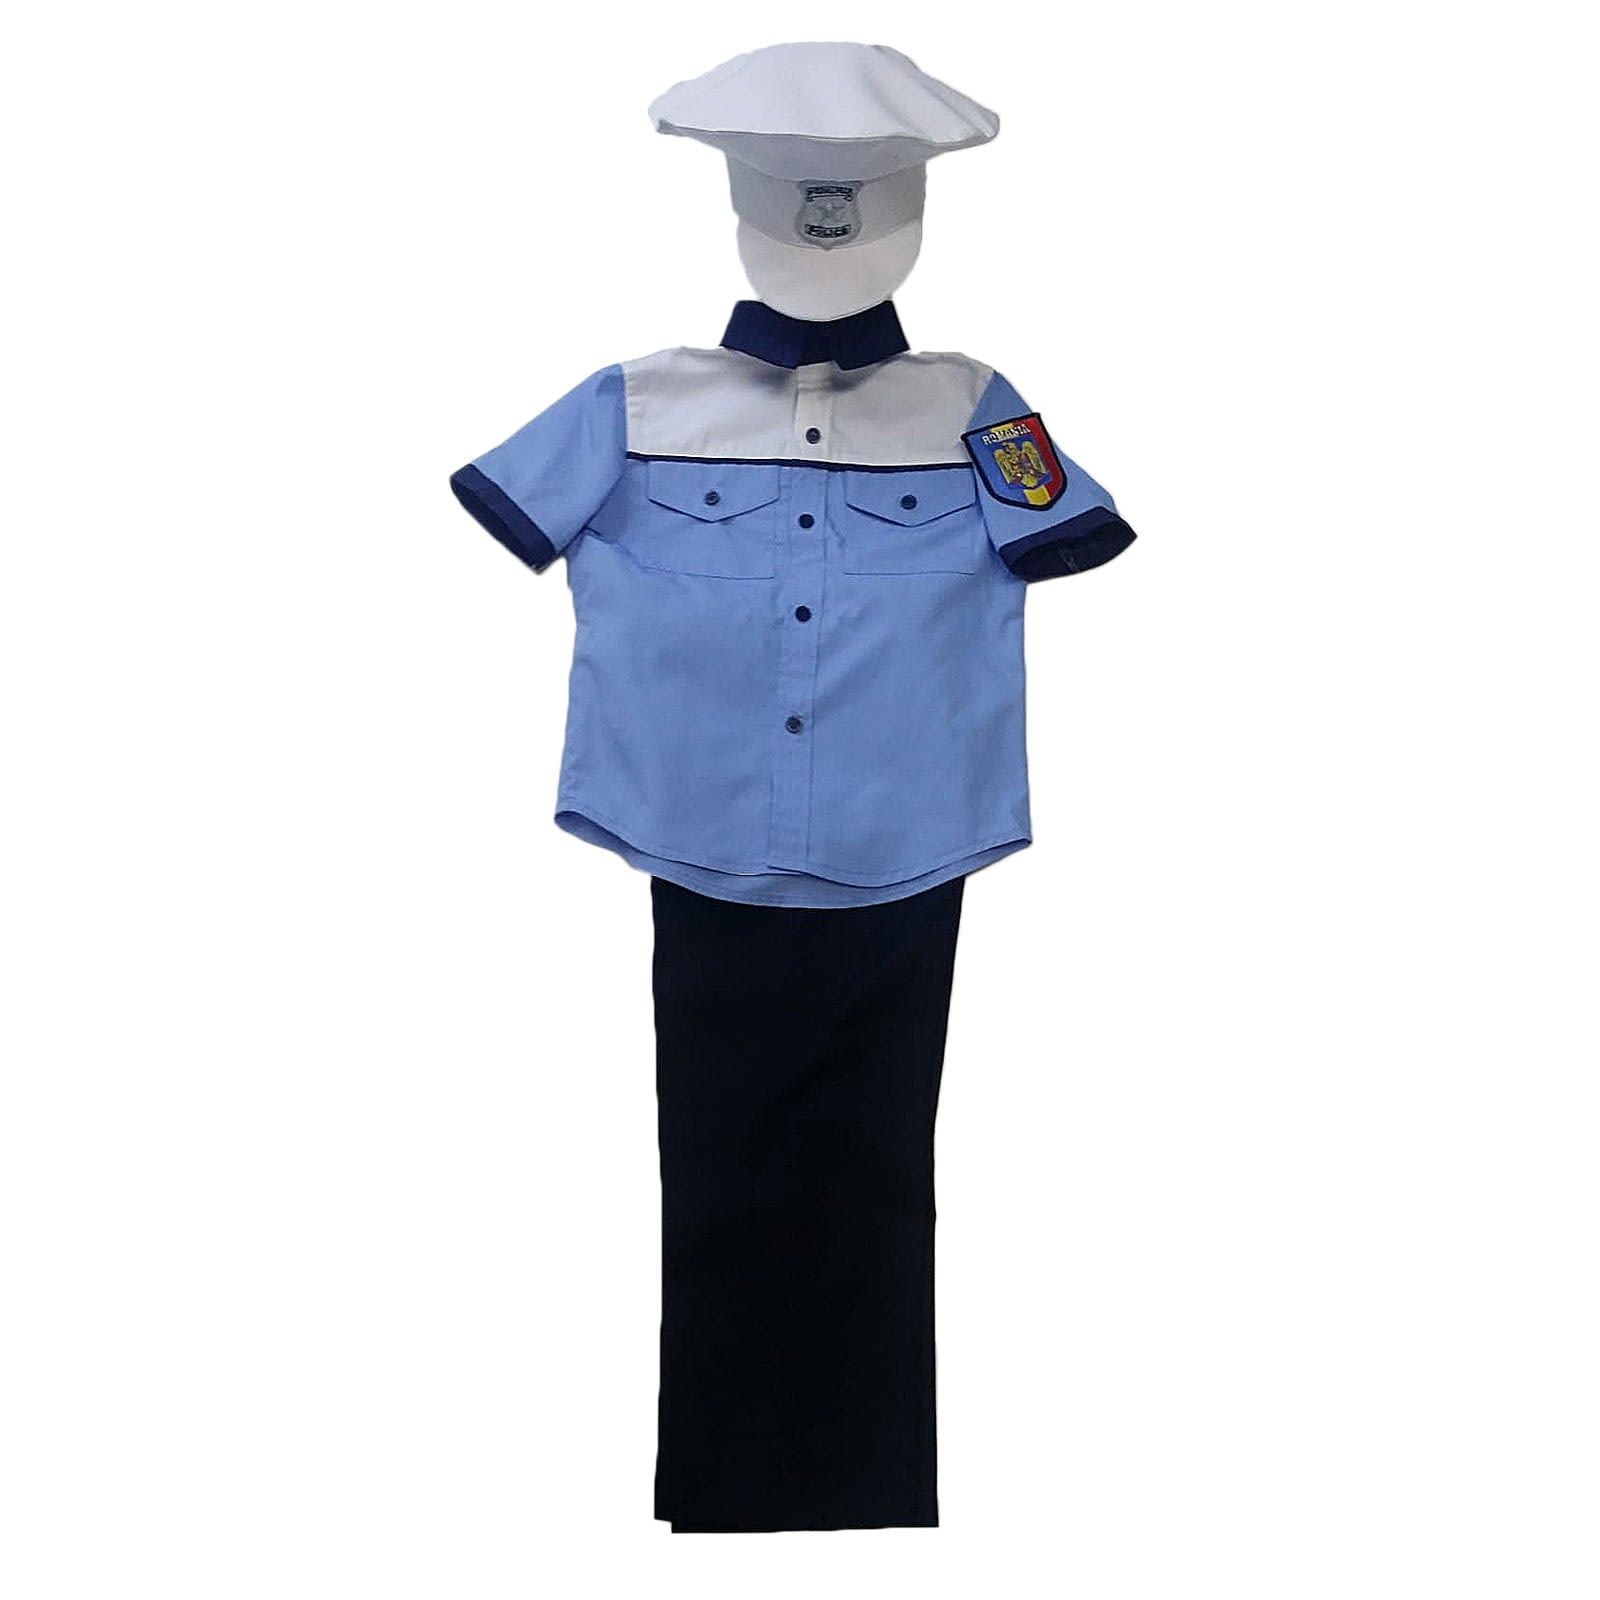 Costum polițist copii - mărimi 2-8 ani